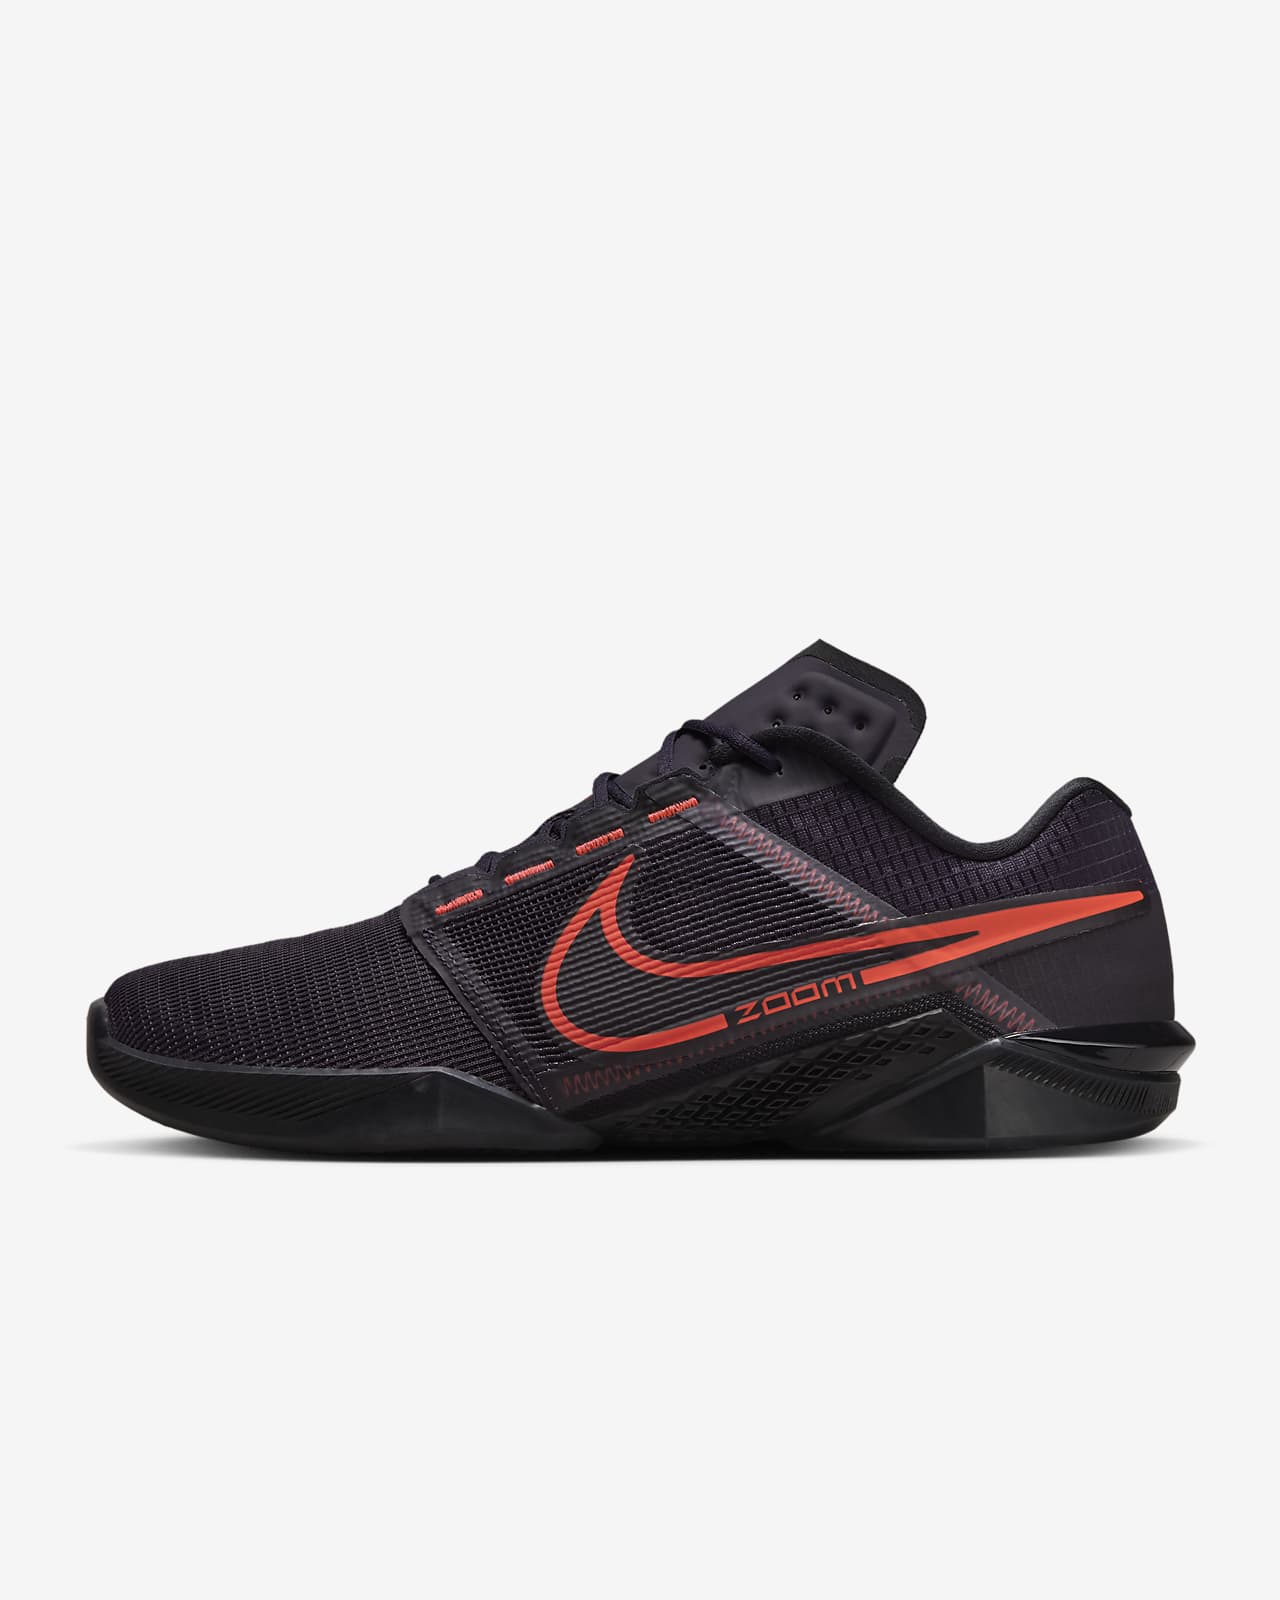 Ανδρικά παπούτσια προπόνησης Nike Zoom Metcon Turbo 2